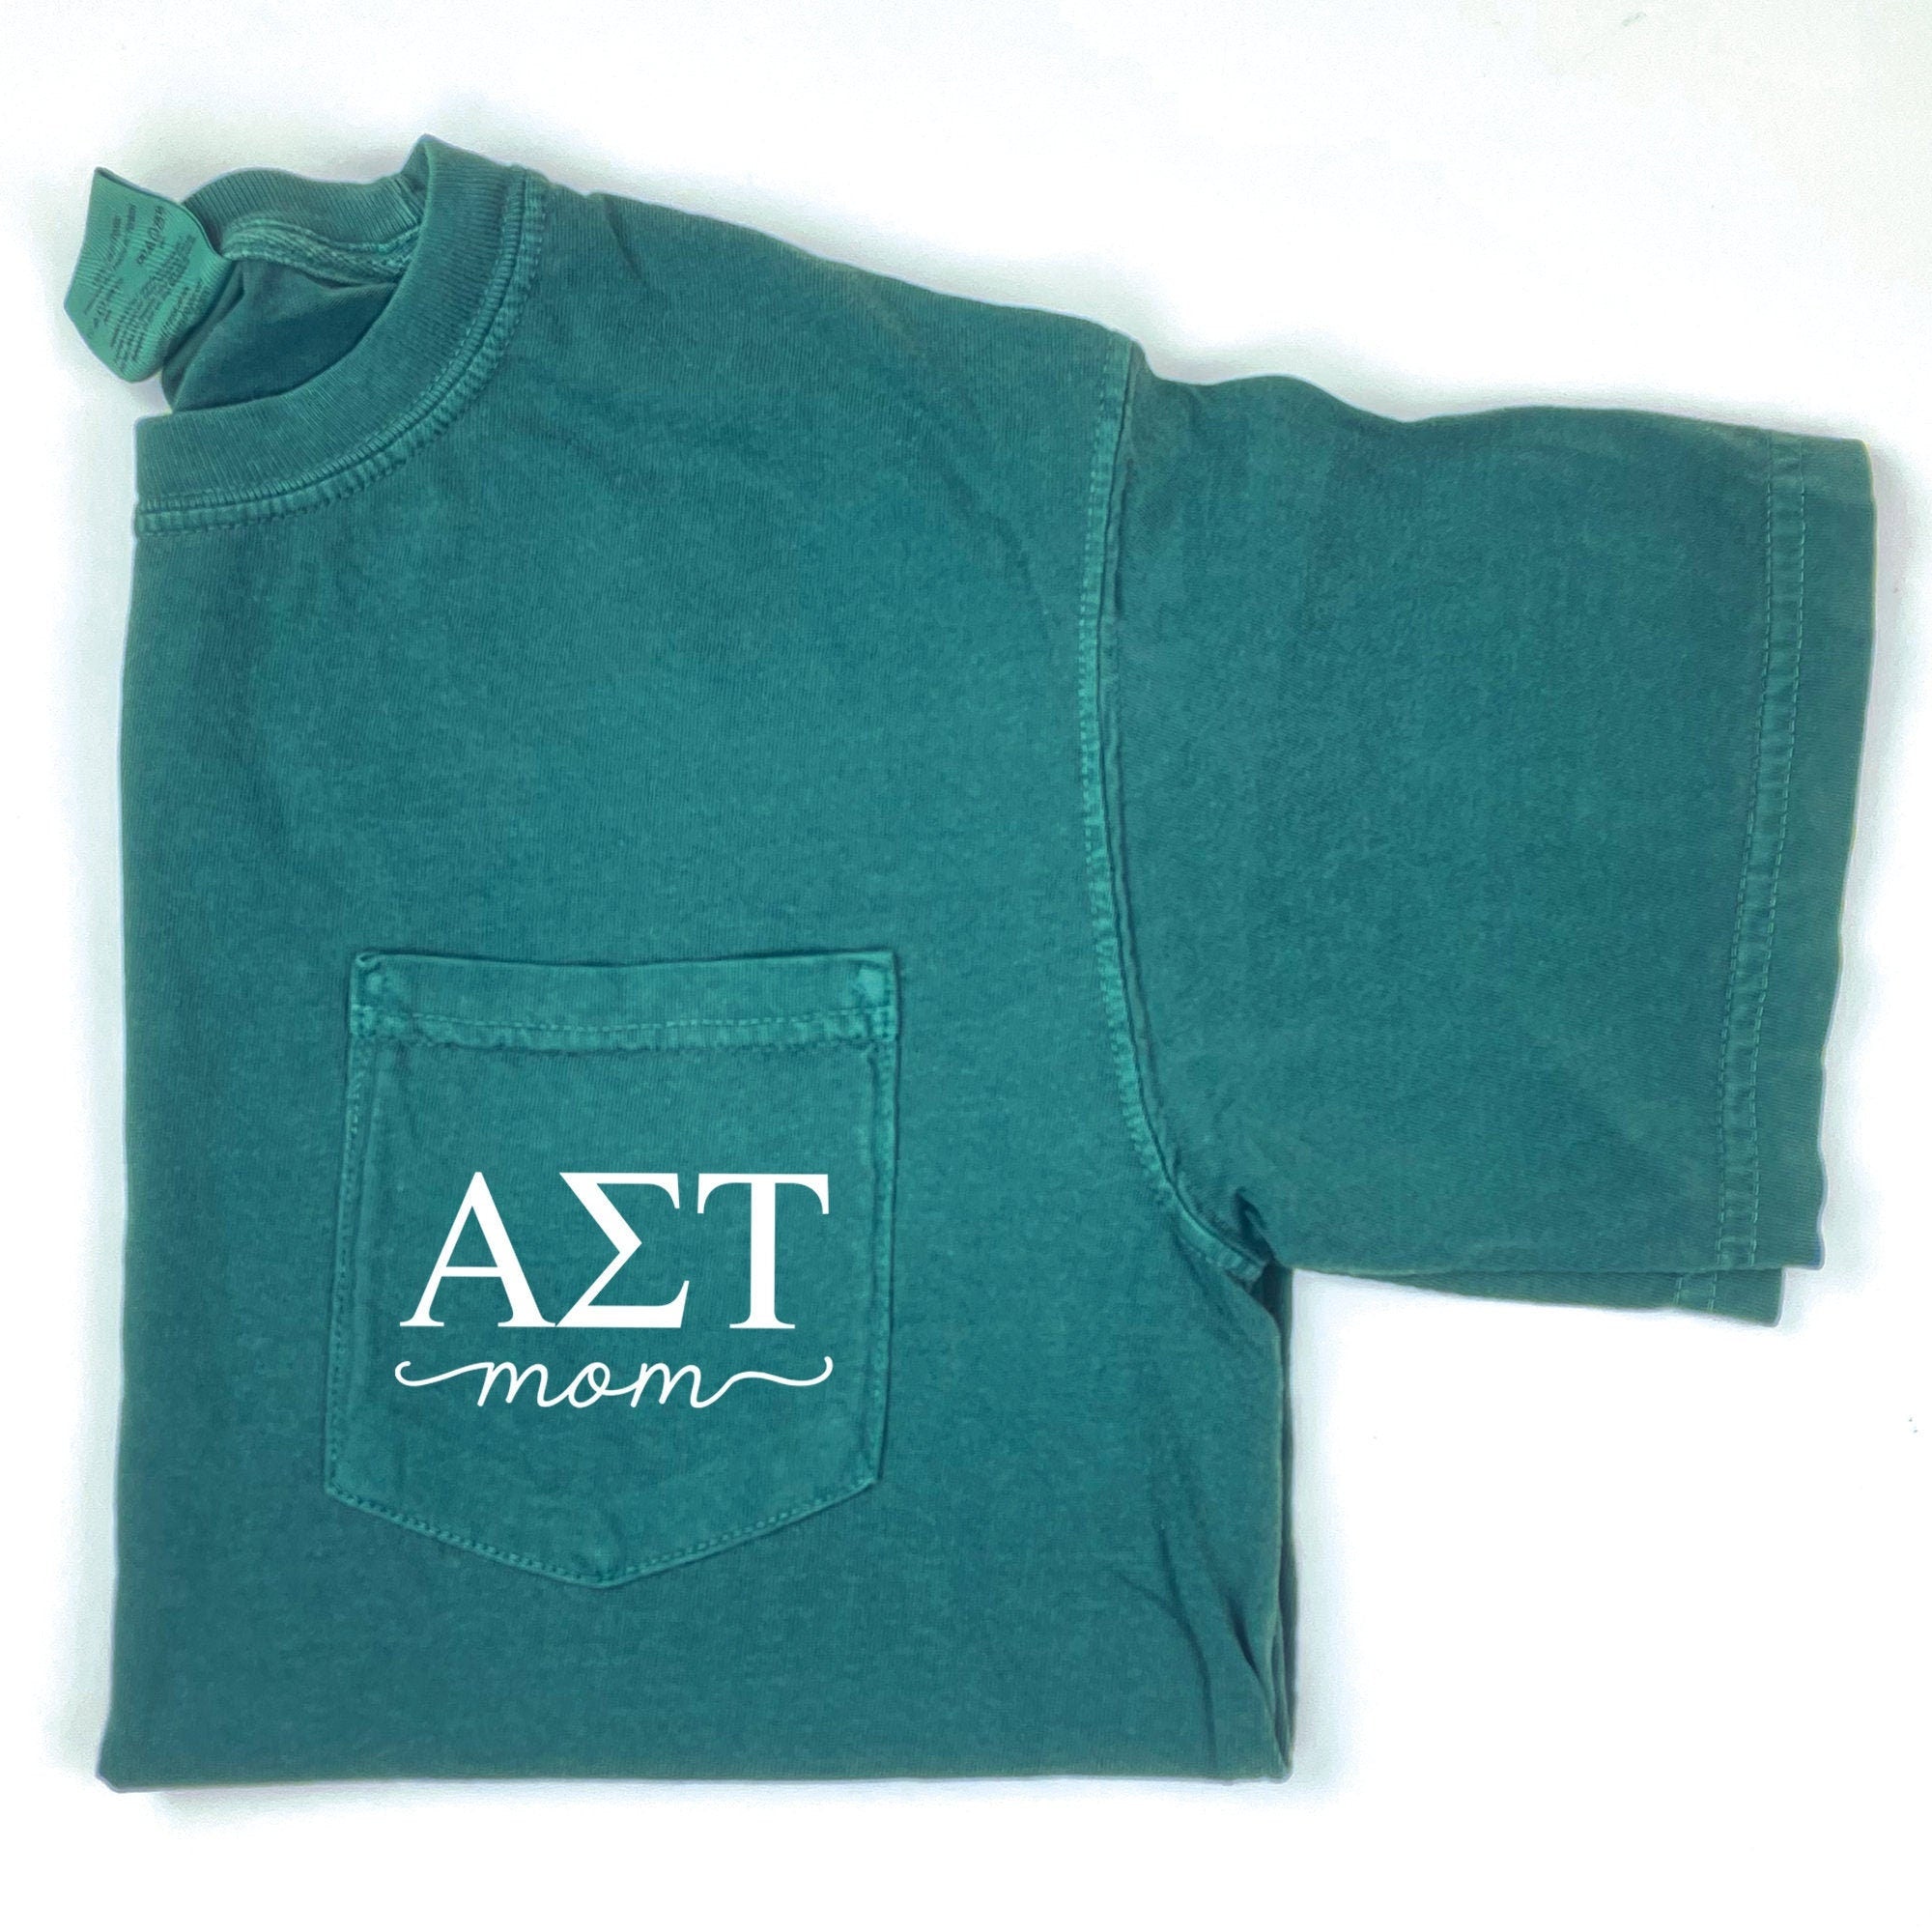 Alpha Sigma Tau Mom T-Shirt - Emerald - Go Greek Chic